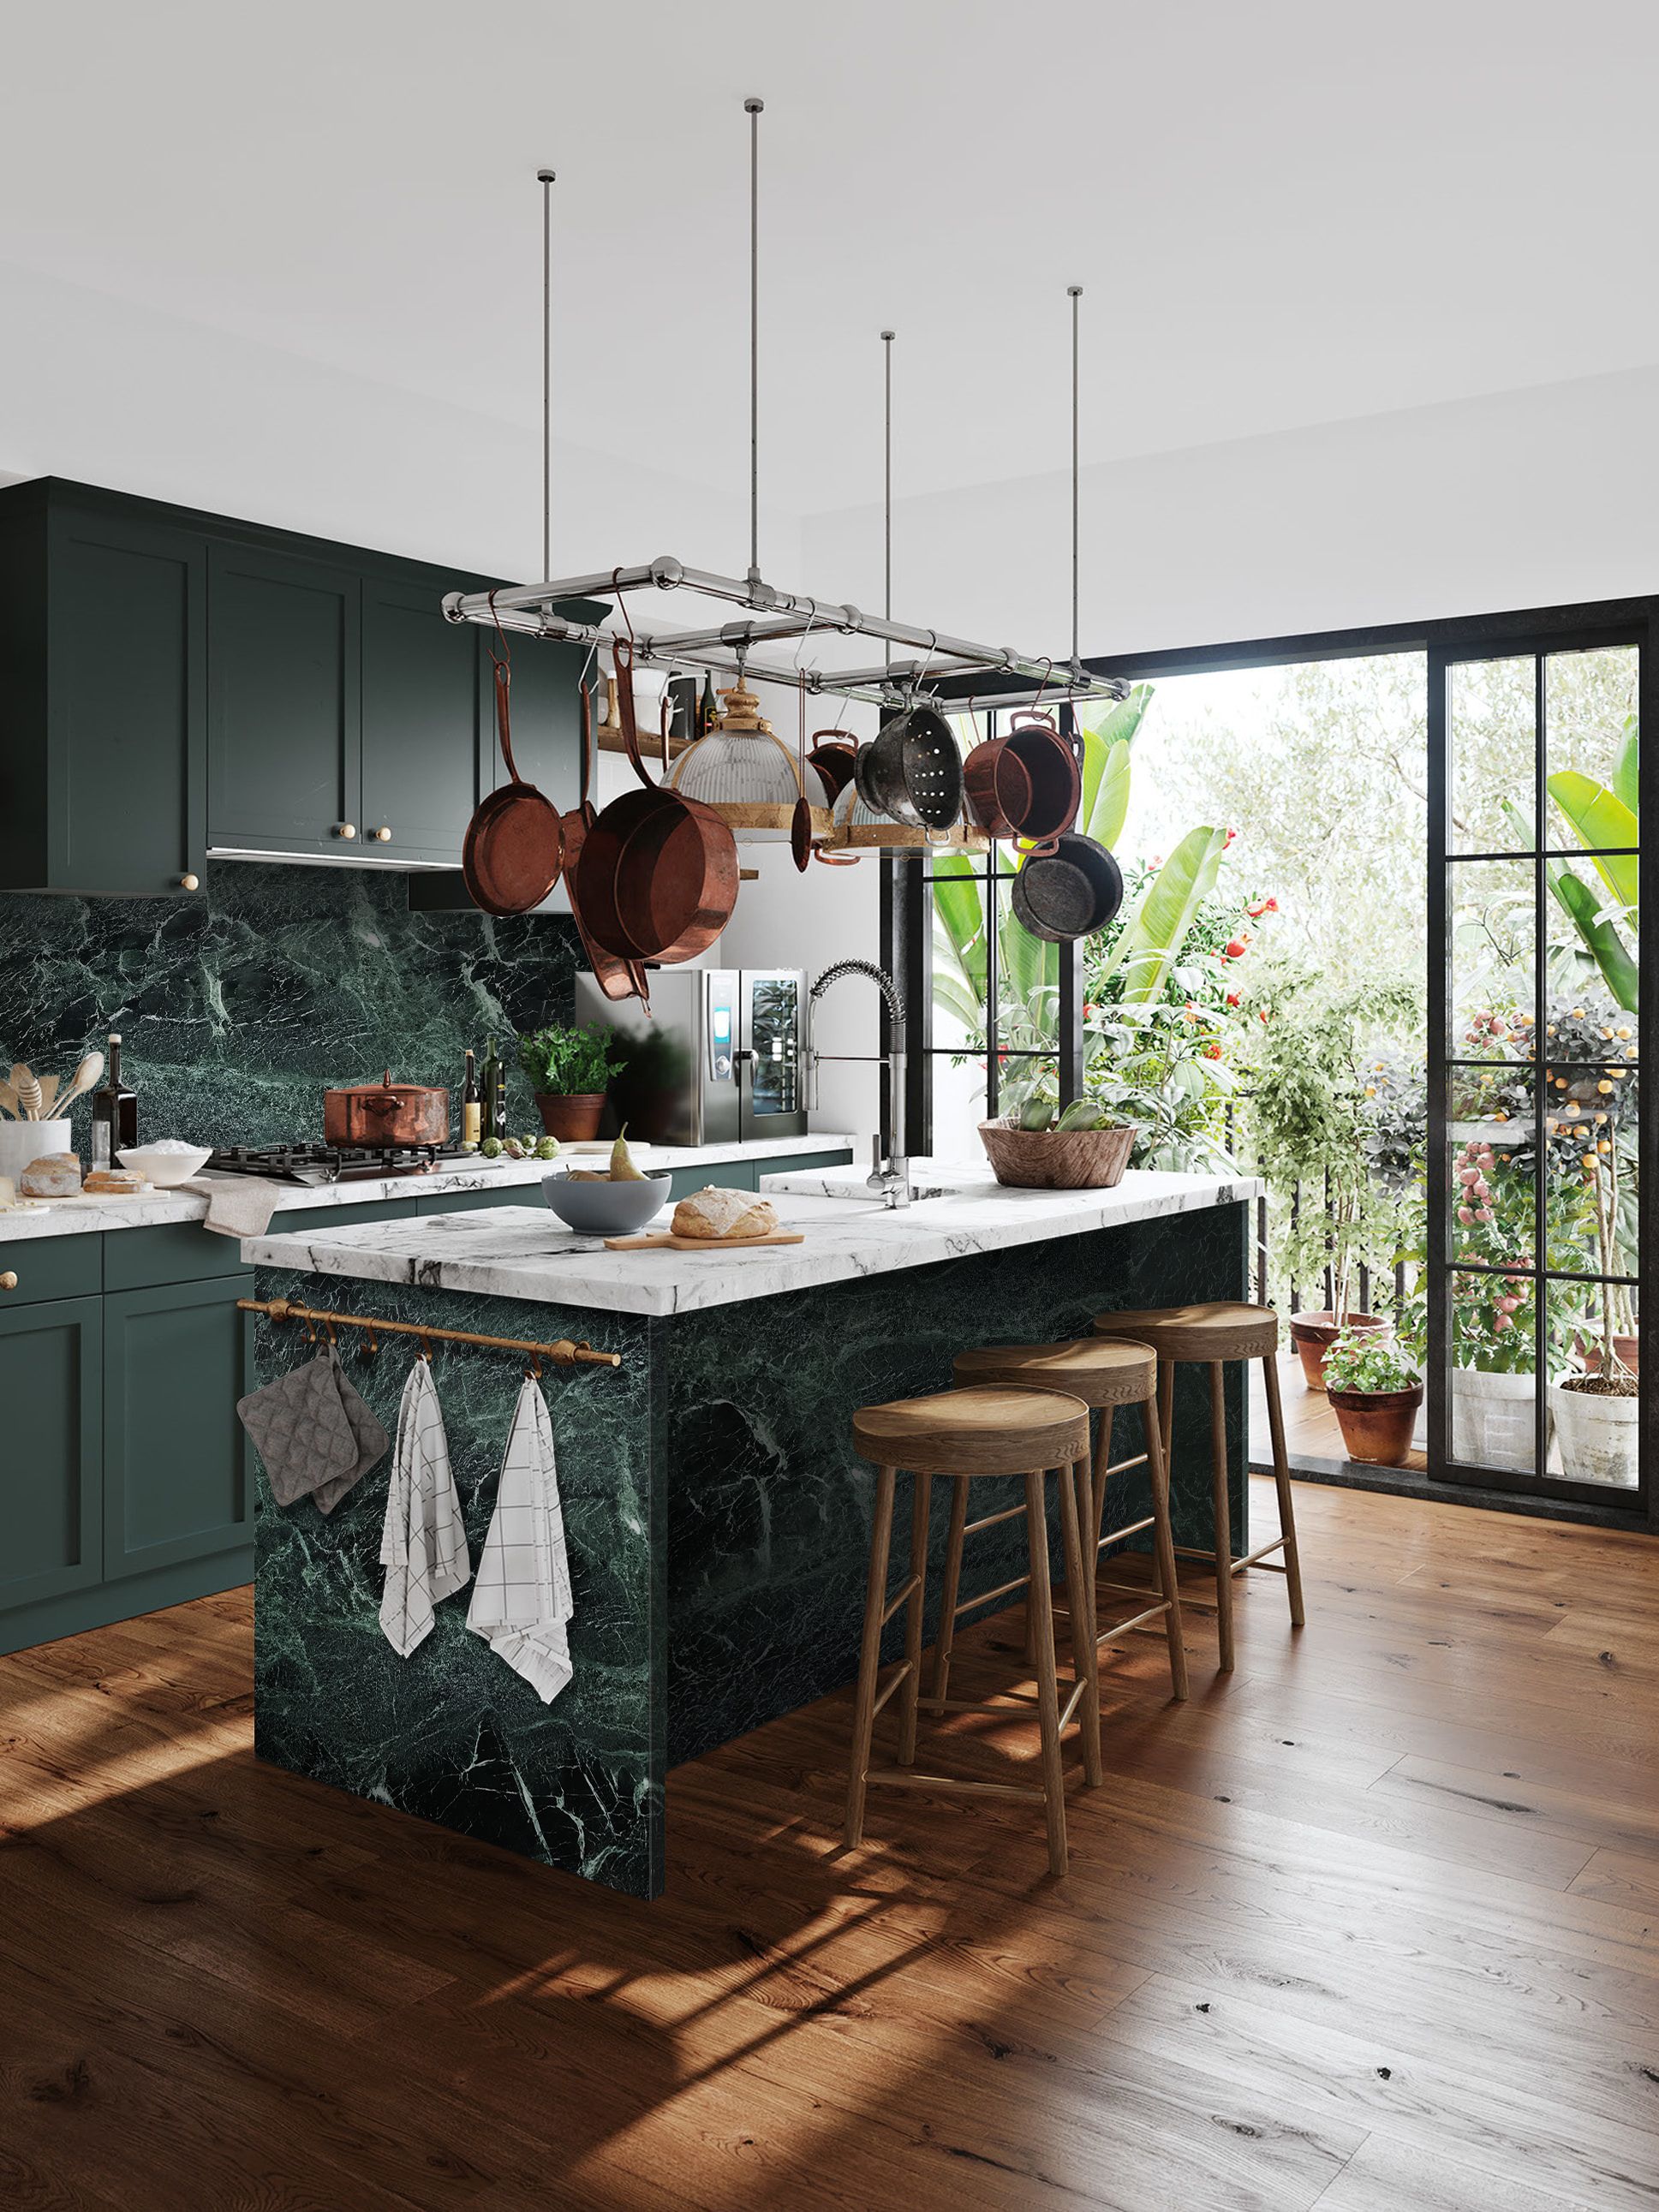 https://hips.hearstapps.com/hmg-prod/images/modern-kitchen-kitchen-island-green-marble-verde-tinos-carrara-mix-kitchen-1614609430.jpg